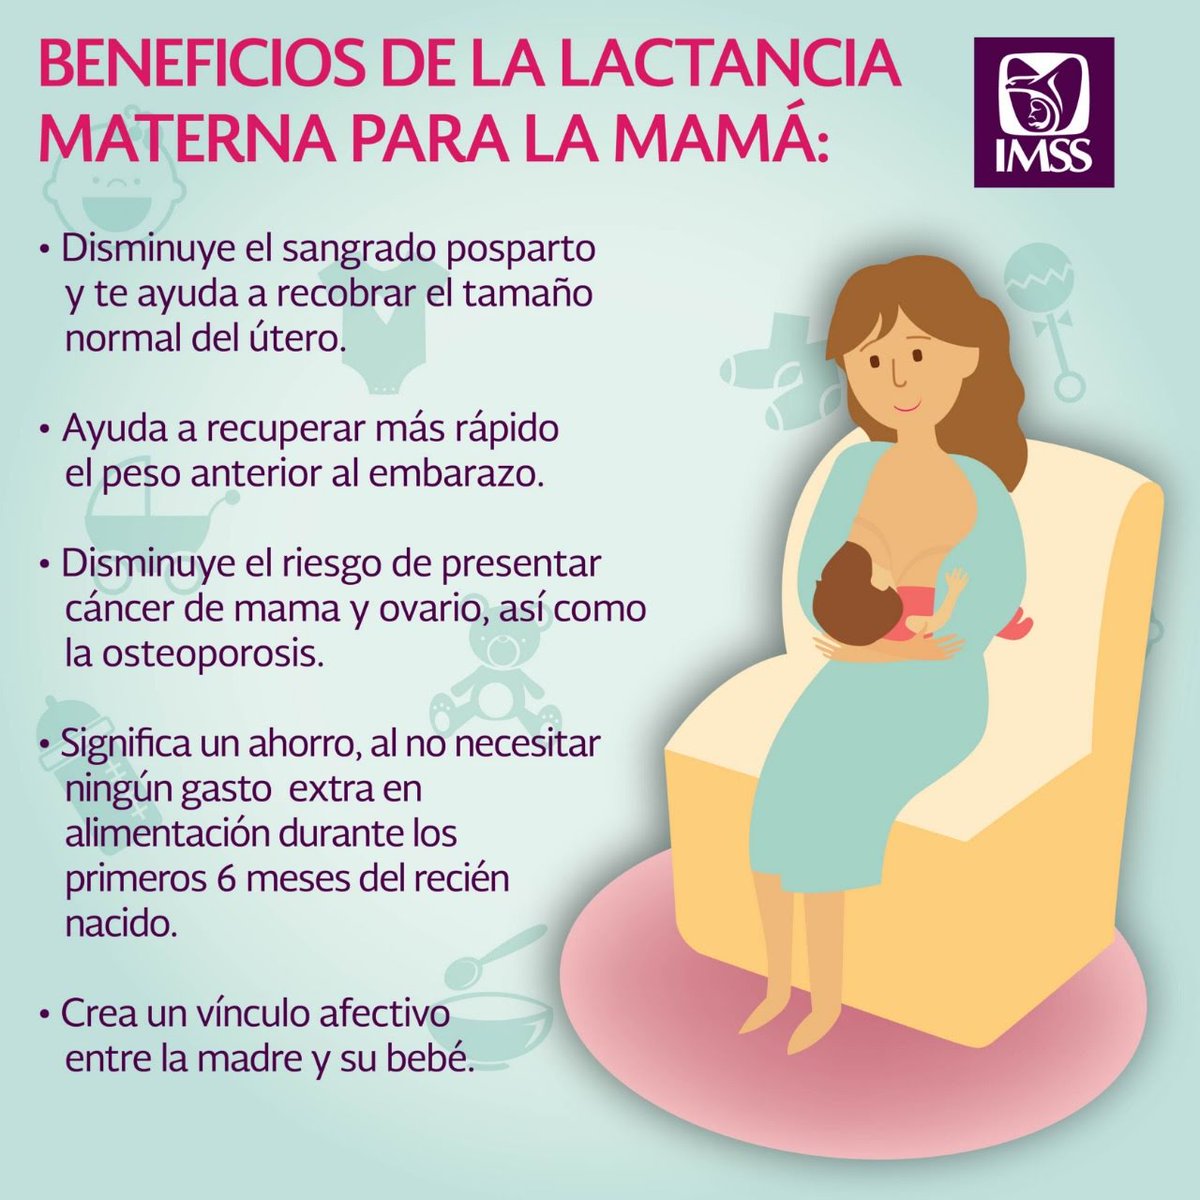 dañar Patriótico Chip gob.mx Twitterren: "El lema de la Semana Mundial de la #LactanciaMaterna  es: "Lactancia materna: los cimientos de la vida" se trata un  reconocimiento de la importancia de la lactancia materna para el